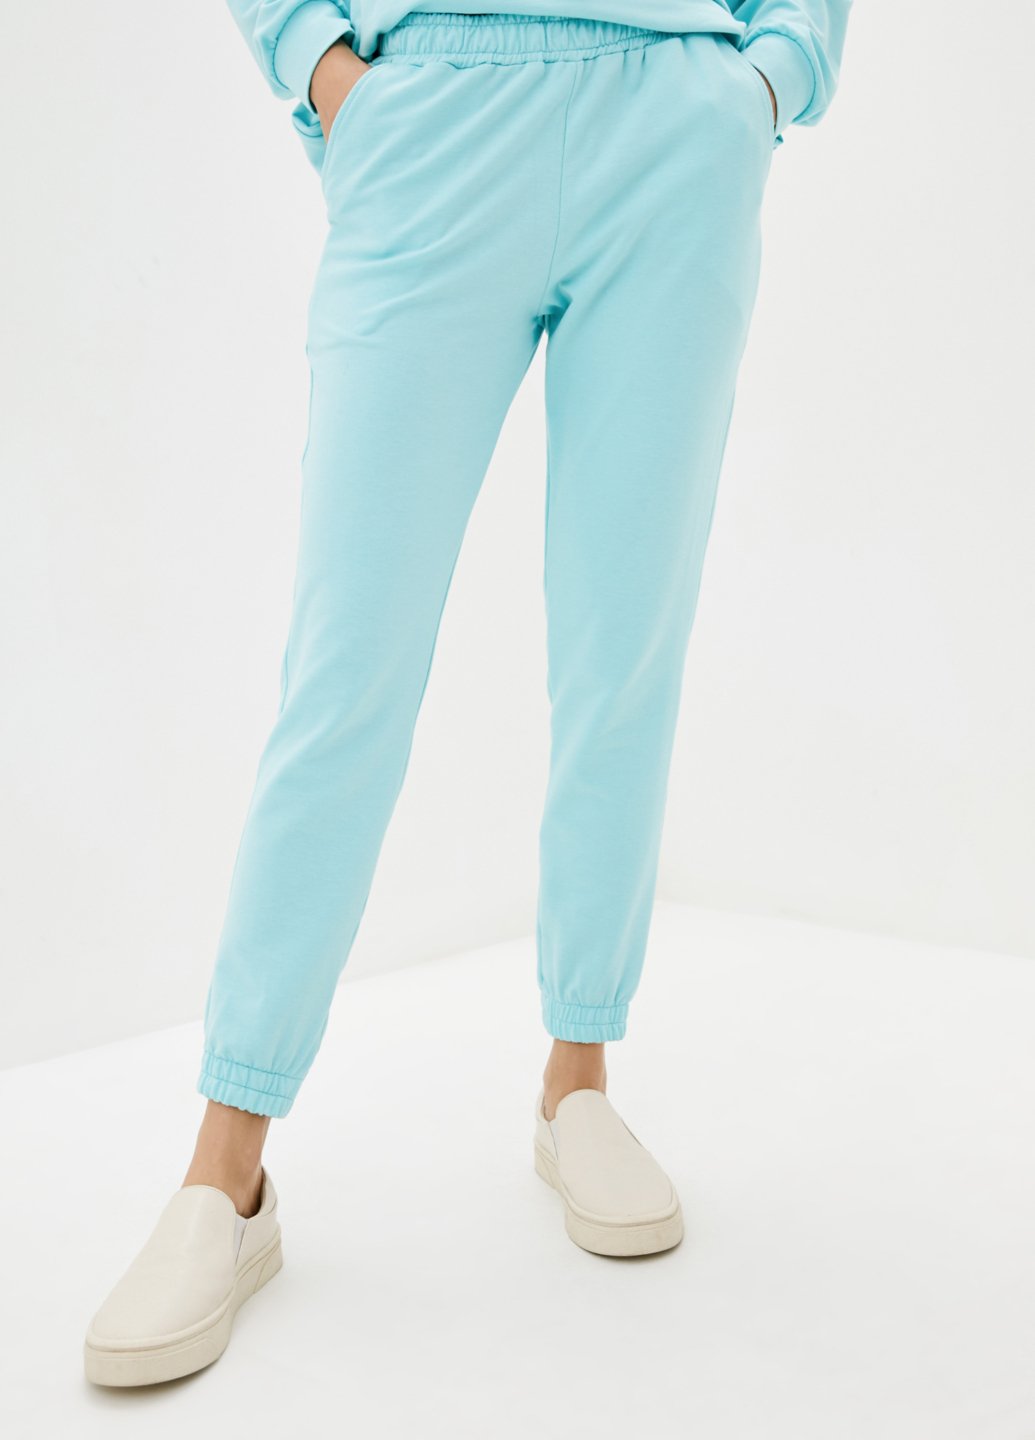 Купити Спортивні штани жіночі Merlini Латина 600000015 - Блакитний, 46-48 в інтернет-магазині